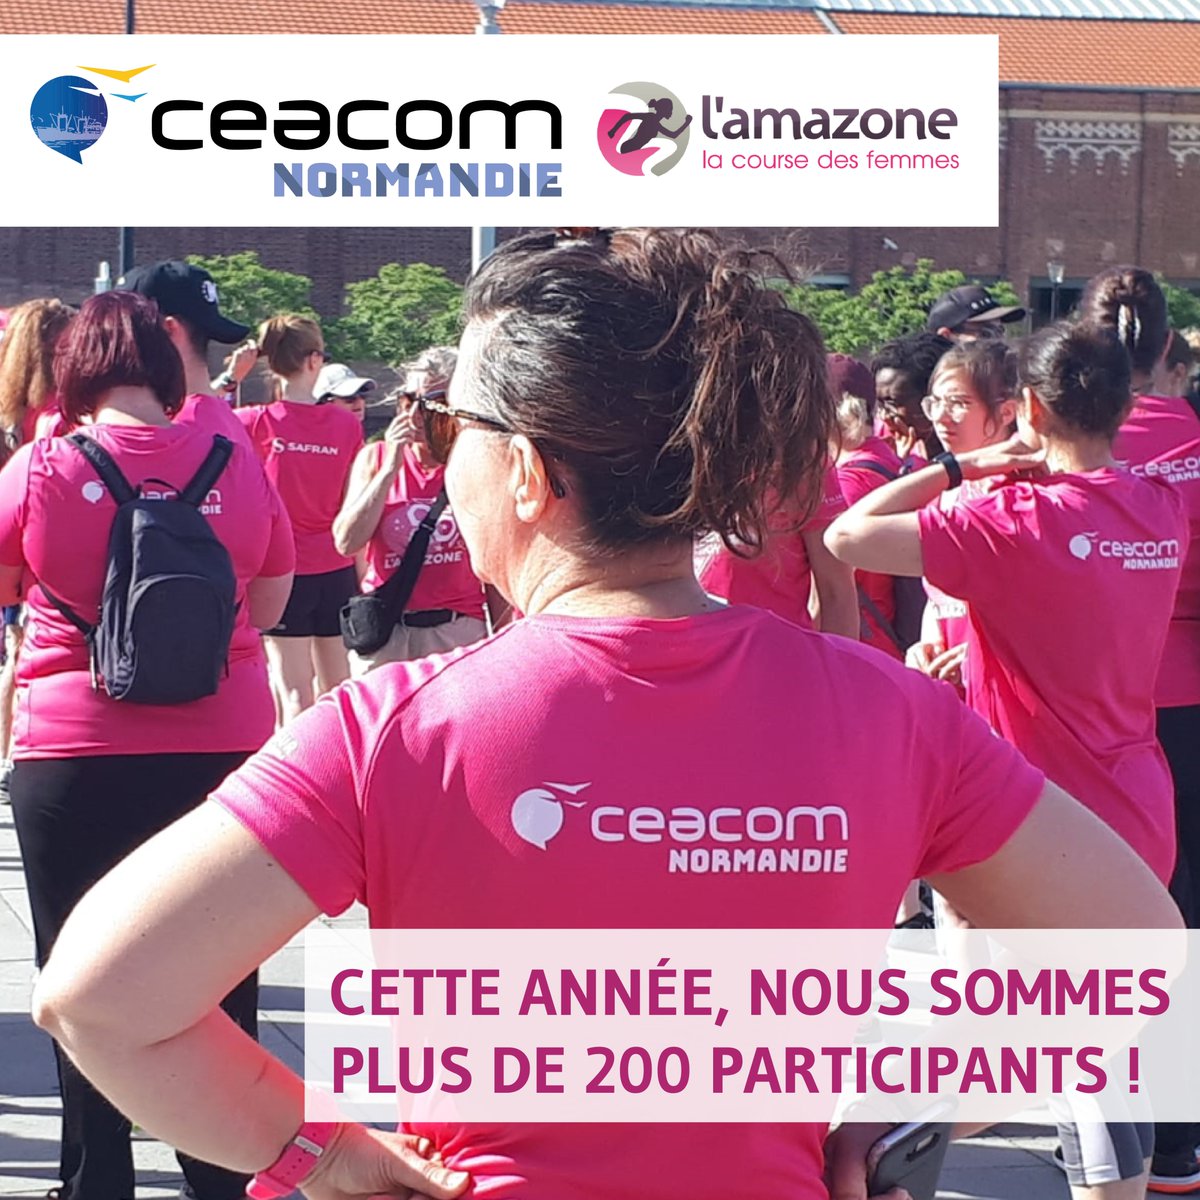 📍 COURSE DE L'AMAZONE

Plus de 200 salariés #InCeacom participent à la course de #lAmazone2022 qui aura lieu le 5 juin prochain dans une ambiance grrrr ! 🤩 

🏃‍♀️ 6 km de marche ou de course au cœur du Havre pour lutter contre le cancer du sein !

#Amazone #Course #Normandie